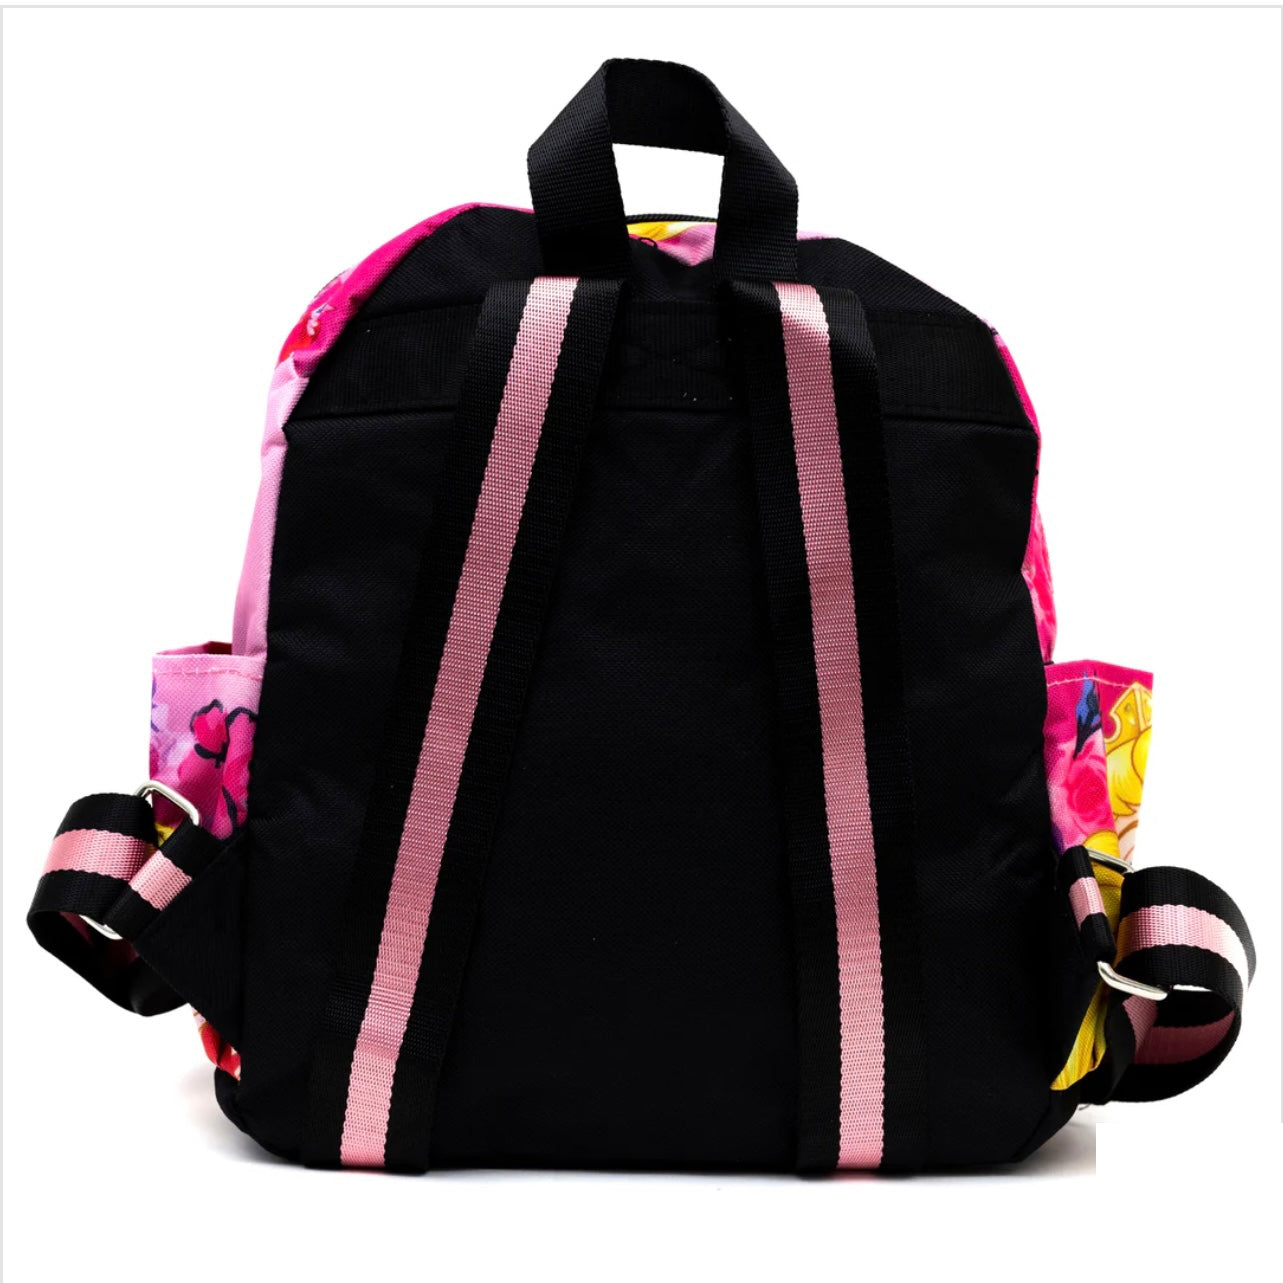 Aurora Fabric Backpack